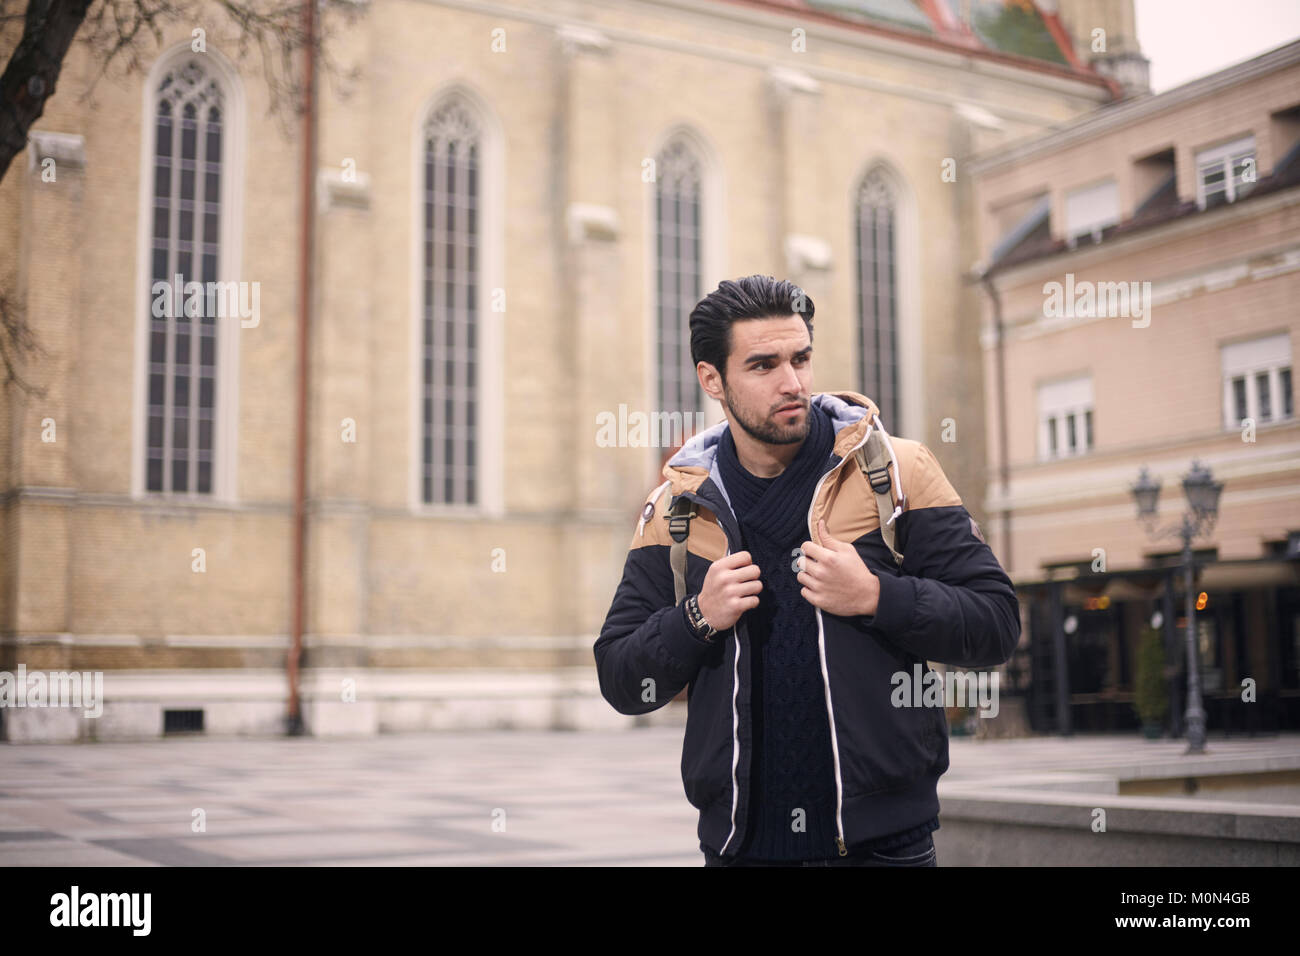 Un hombre joven, posando, vistiendo chaqueta, otoño/invierno de ropa. Ubicación urbana, vintage la arquitectura antigua. Ubicación: 'Novi Sad, Serbia'. Foto de stock